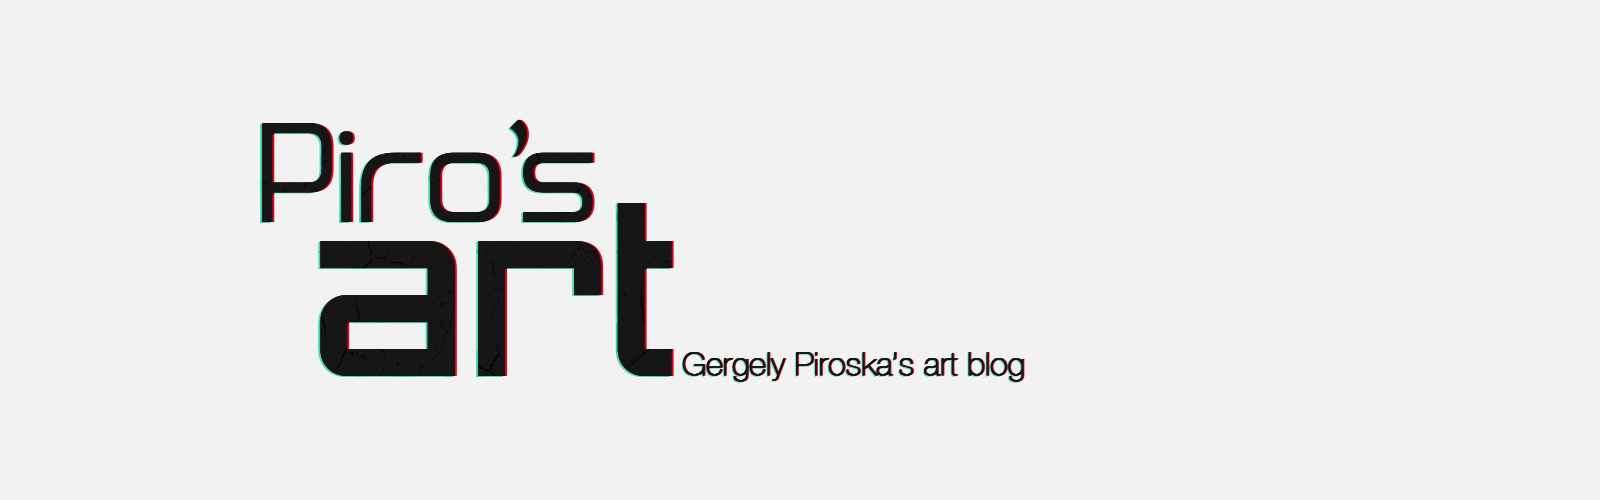 Piro's Art blog